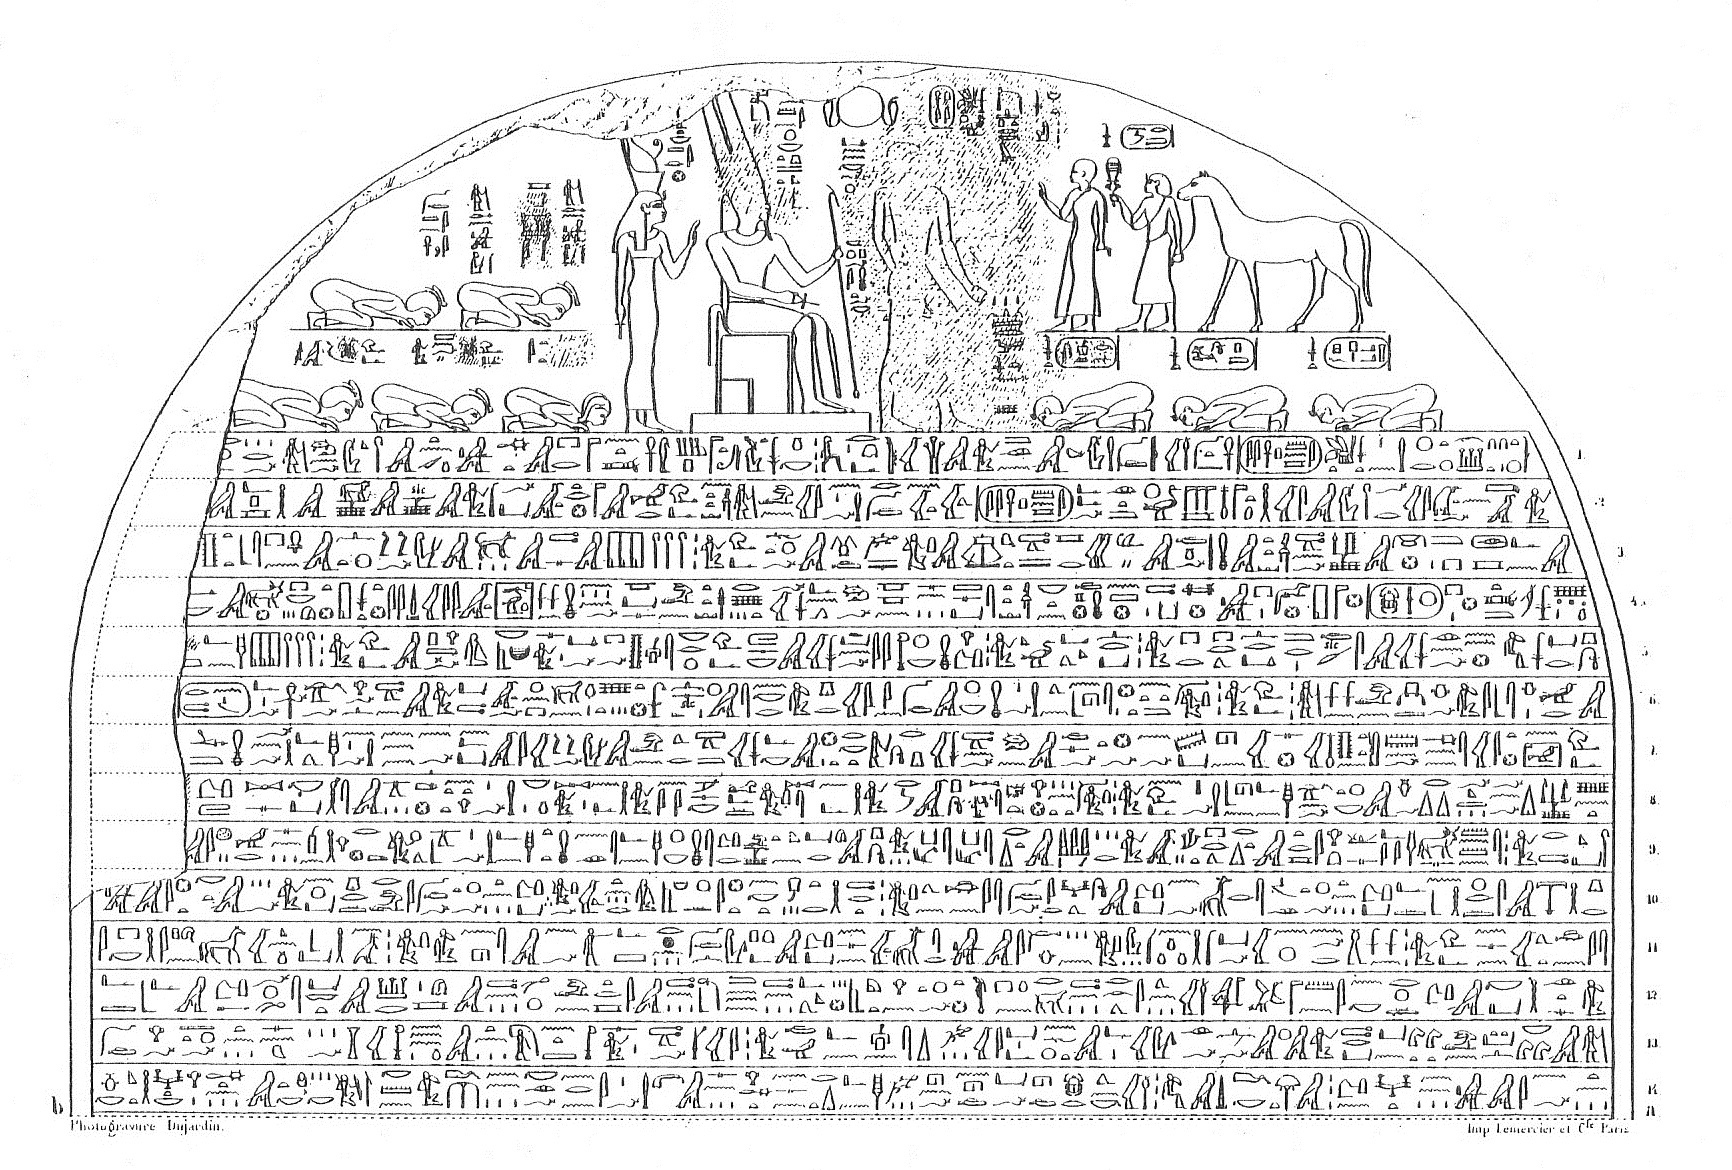 pharaoh game saqqara win conditions met no victory